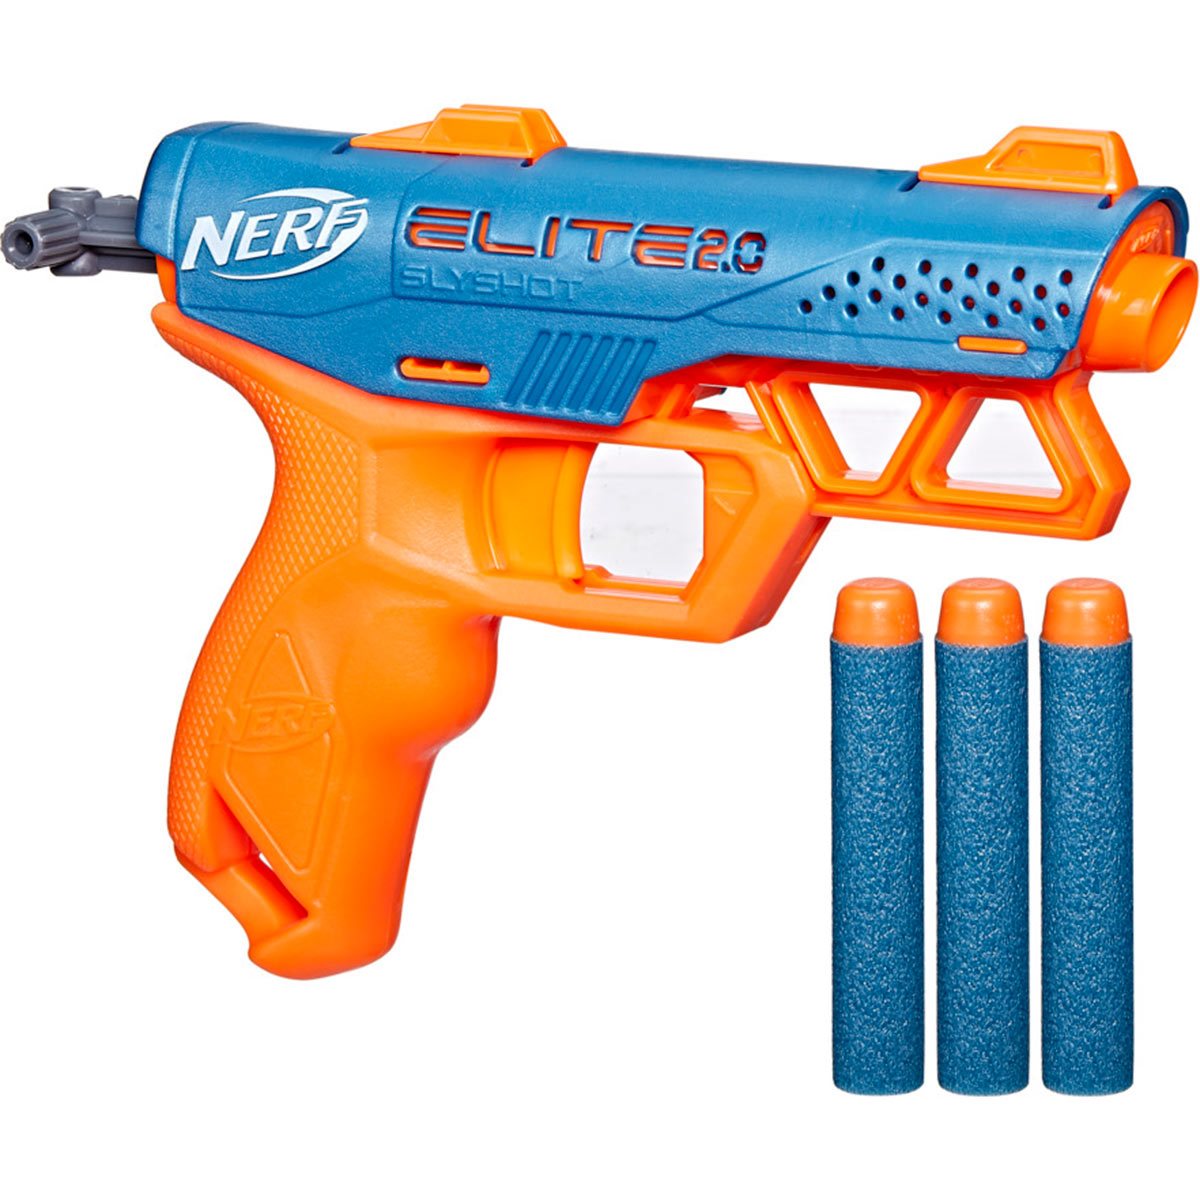 Nerf Elite 2.0 Volt Sd-1 Blaster : Target